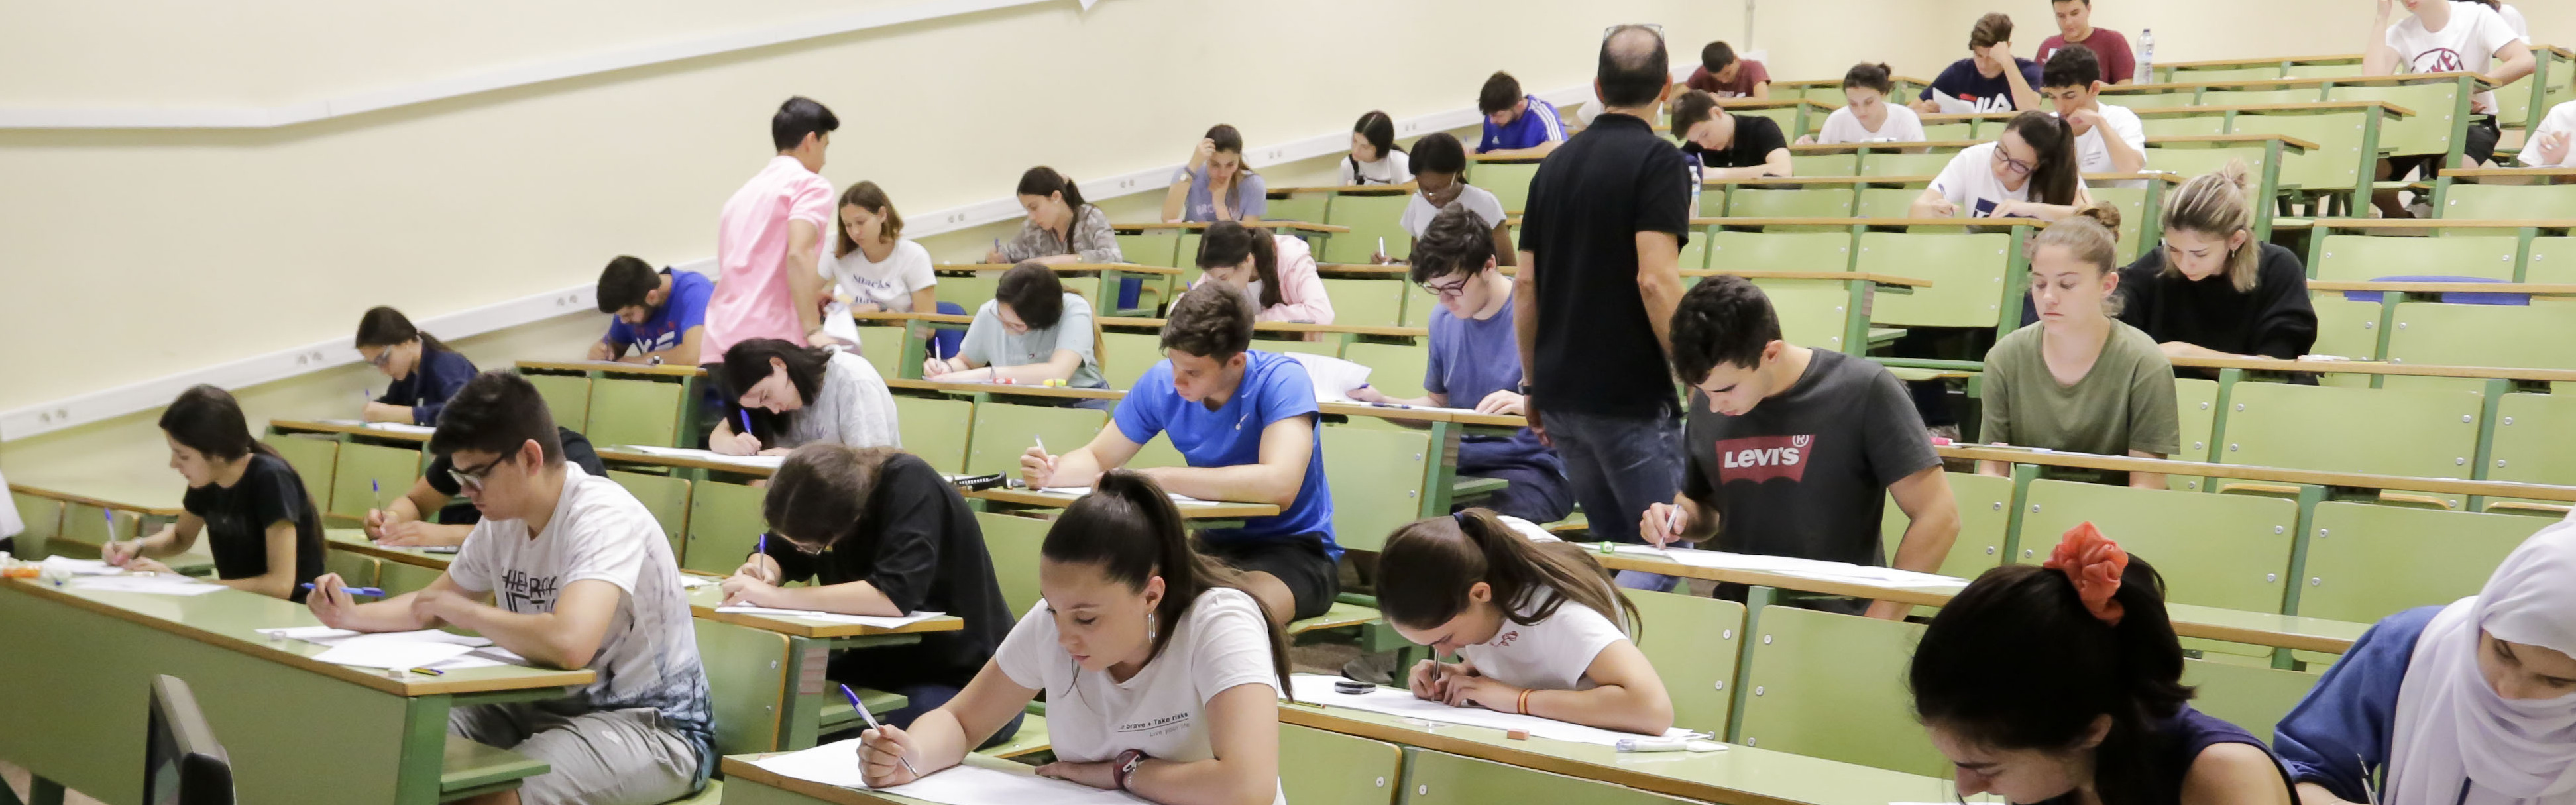 El 94,7 por ciento del alumnado aprueba la EBAU en la Región de Murcia